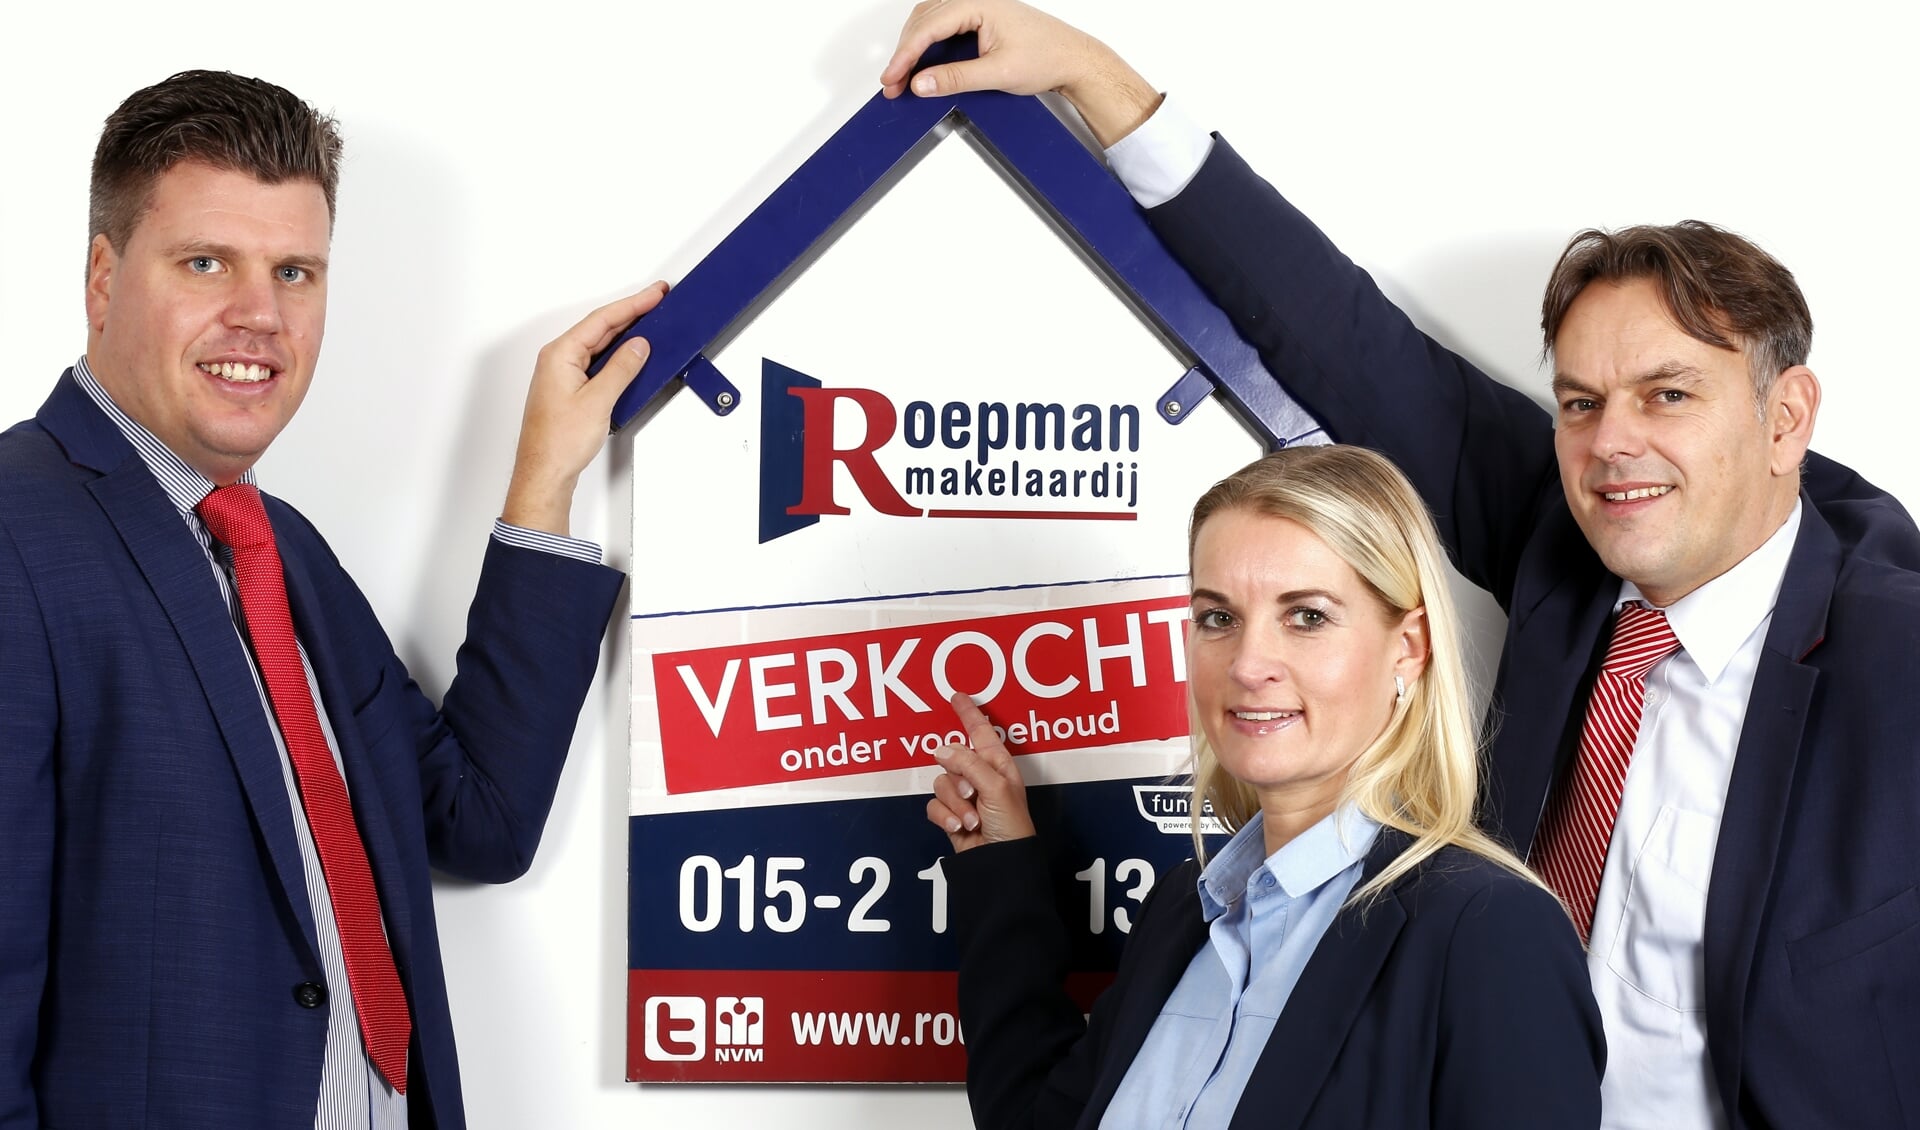 Roepman Makelaardij, met van links naar rechts Martijn Sinnema, Nicole Dekker en Ronald Roepman.